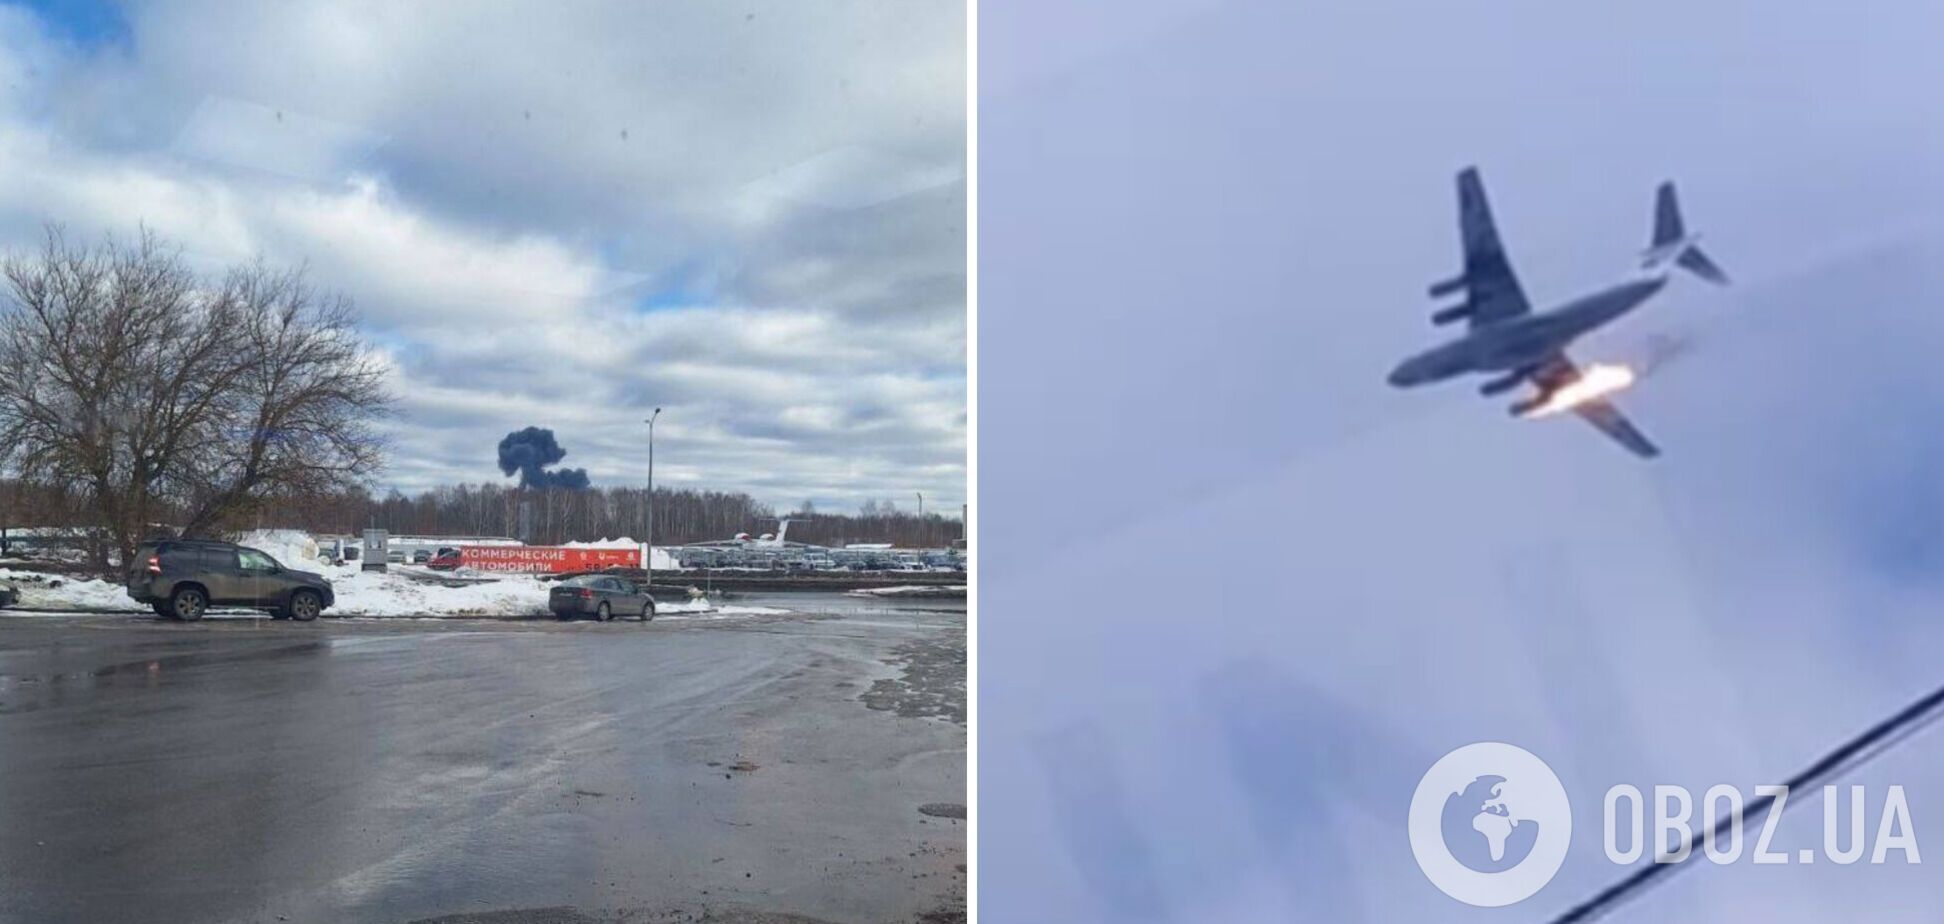 В России загорелся в небе и упал в лесополосу самолет Ил-76: все подробности. Фото и видео